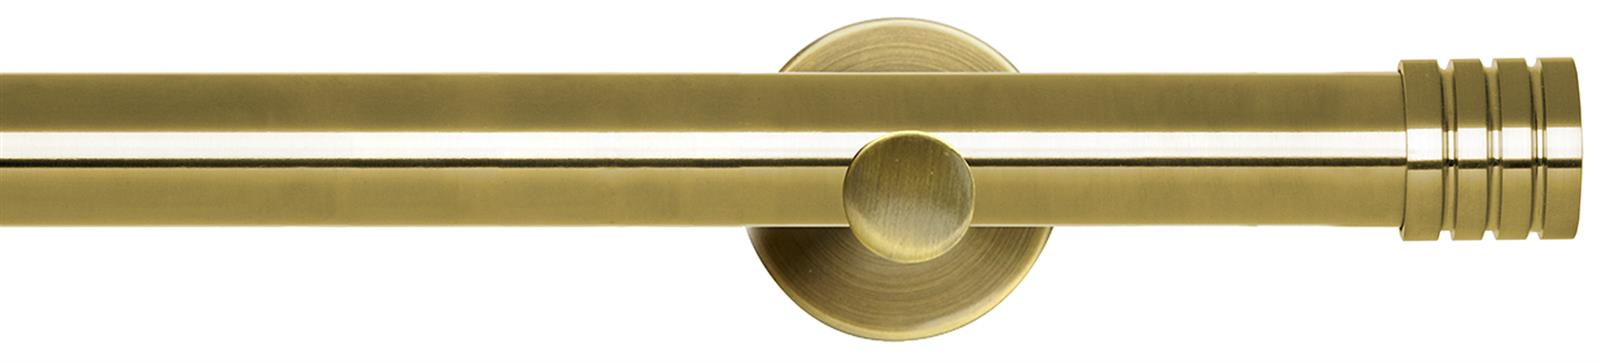 Neo 28mm Eyelet Pole Spun Brass Cylinder Stud